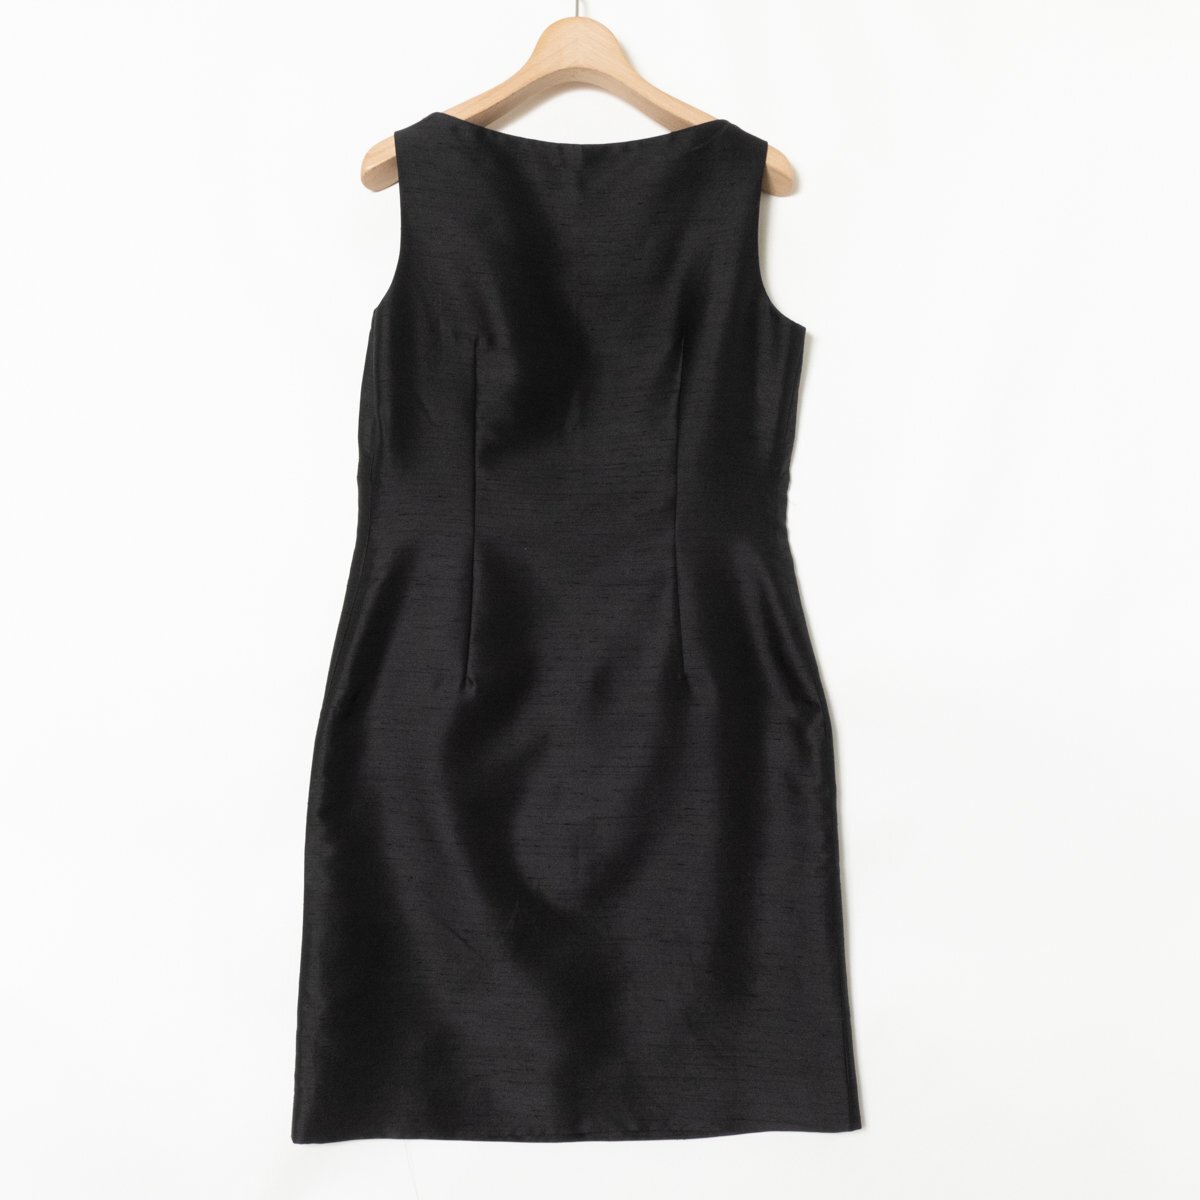 4*Cyondosi- безрукавка One-piece M размер полиэстер 100% черный чёрный красивый . формальный женщина одежда 